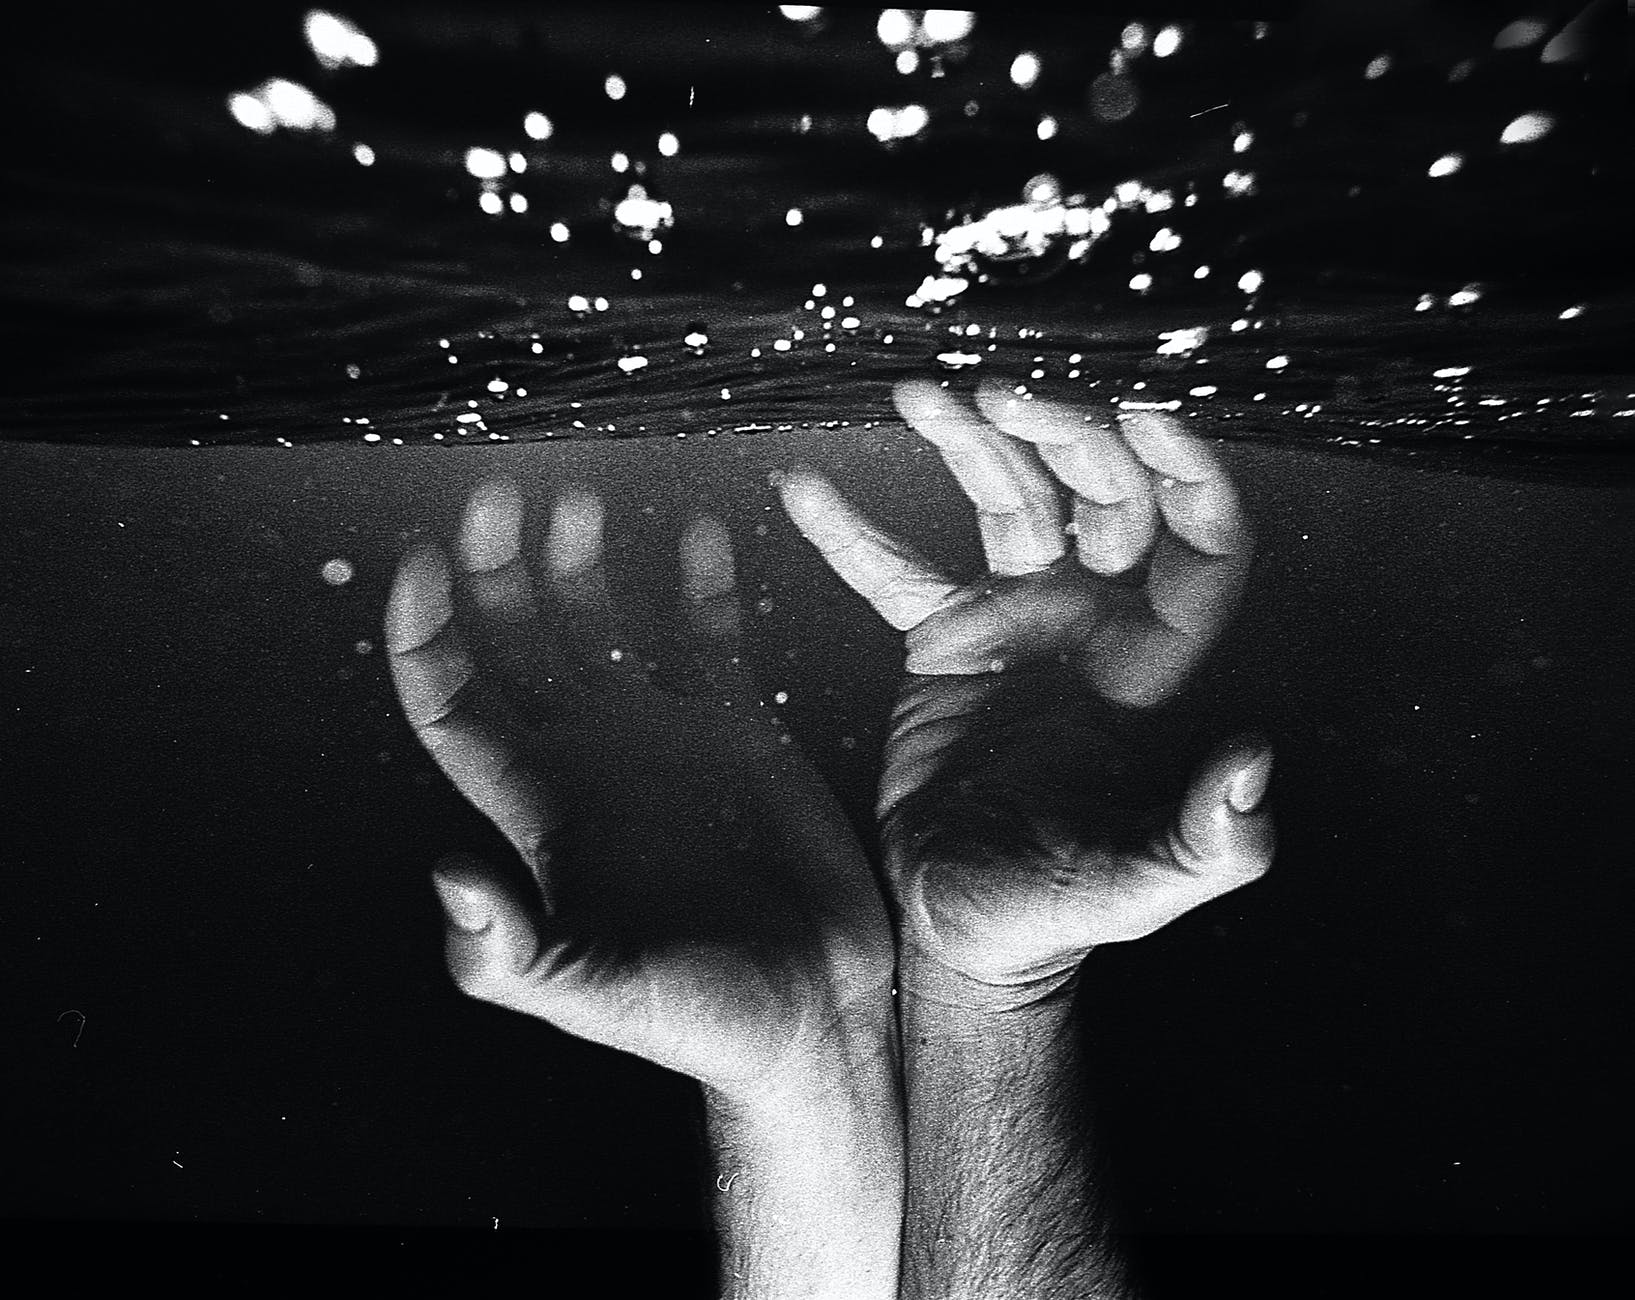 hands of crop faceless man under water